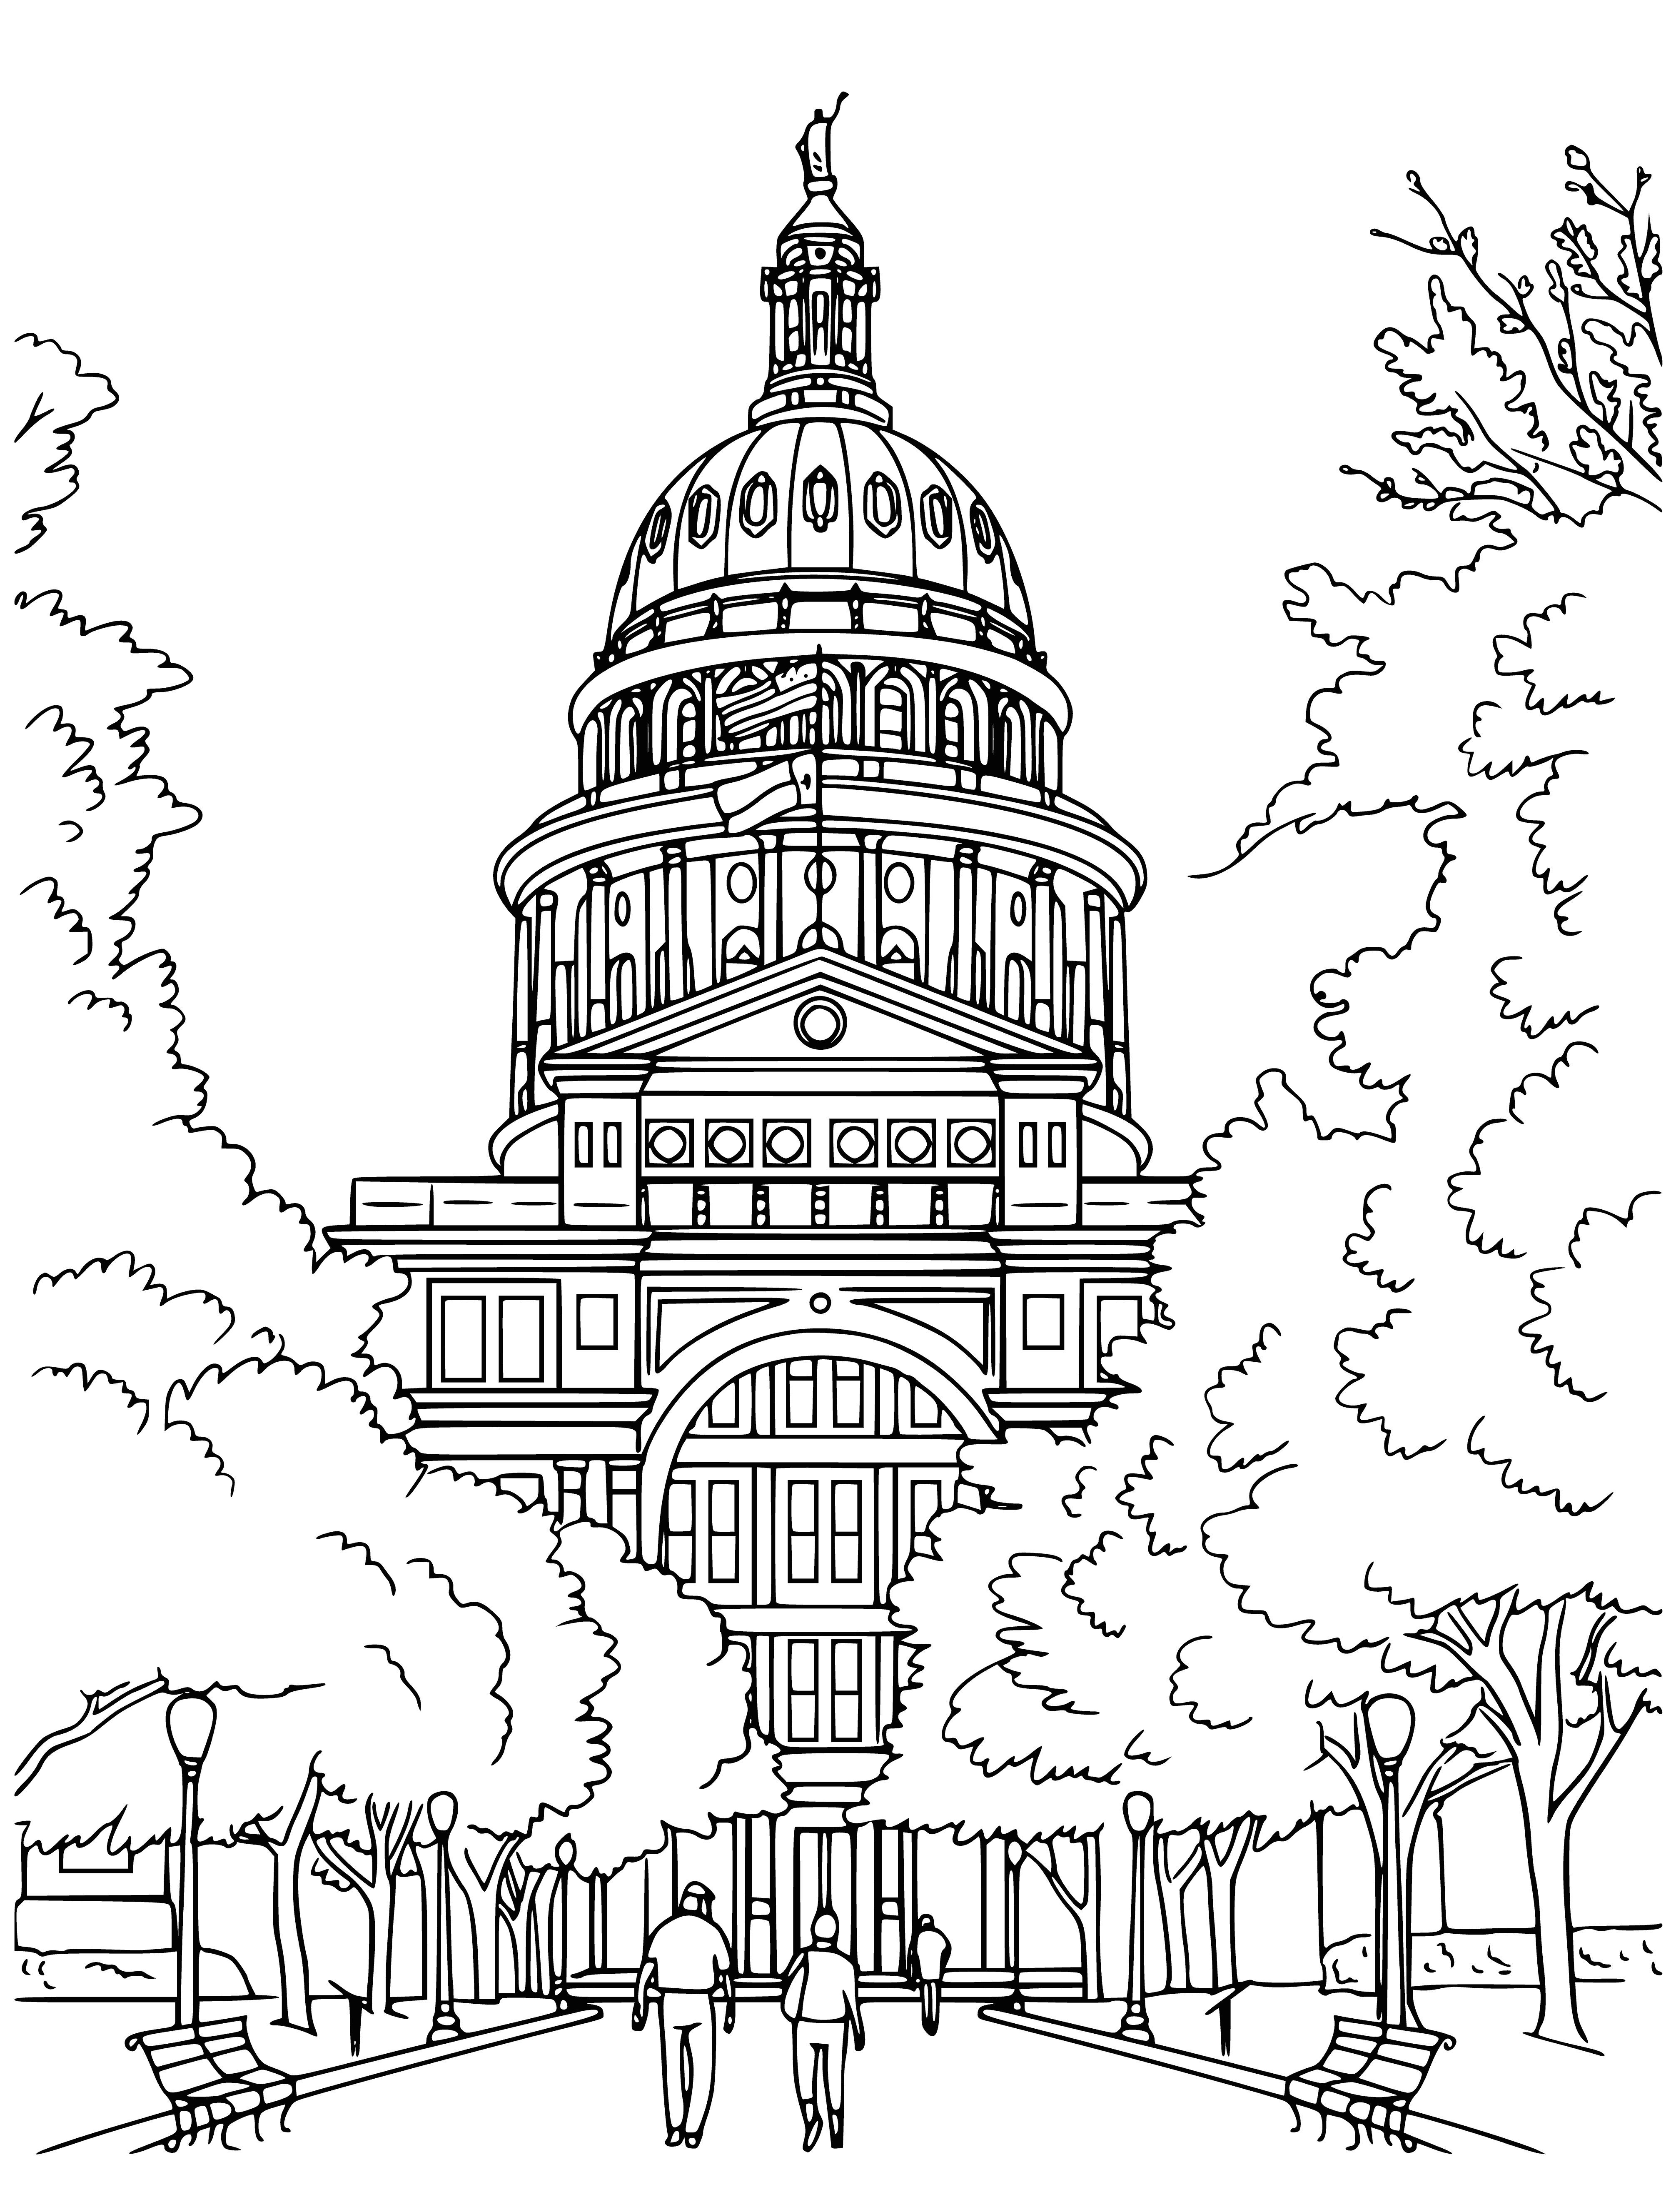 Kapitol-Gebäude in Washington DC. Vereinigte Staaten von Amerika Malseite